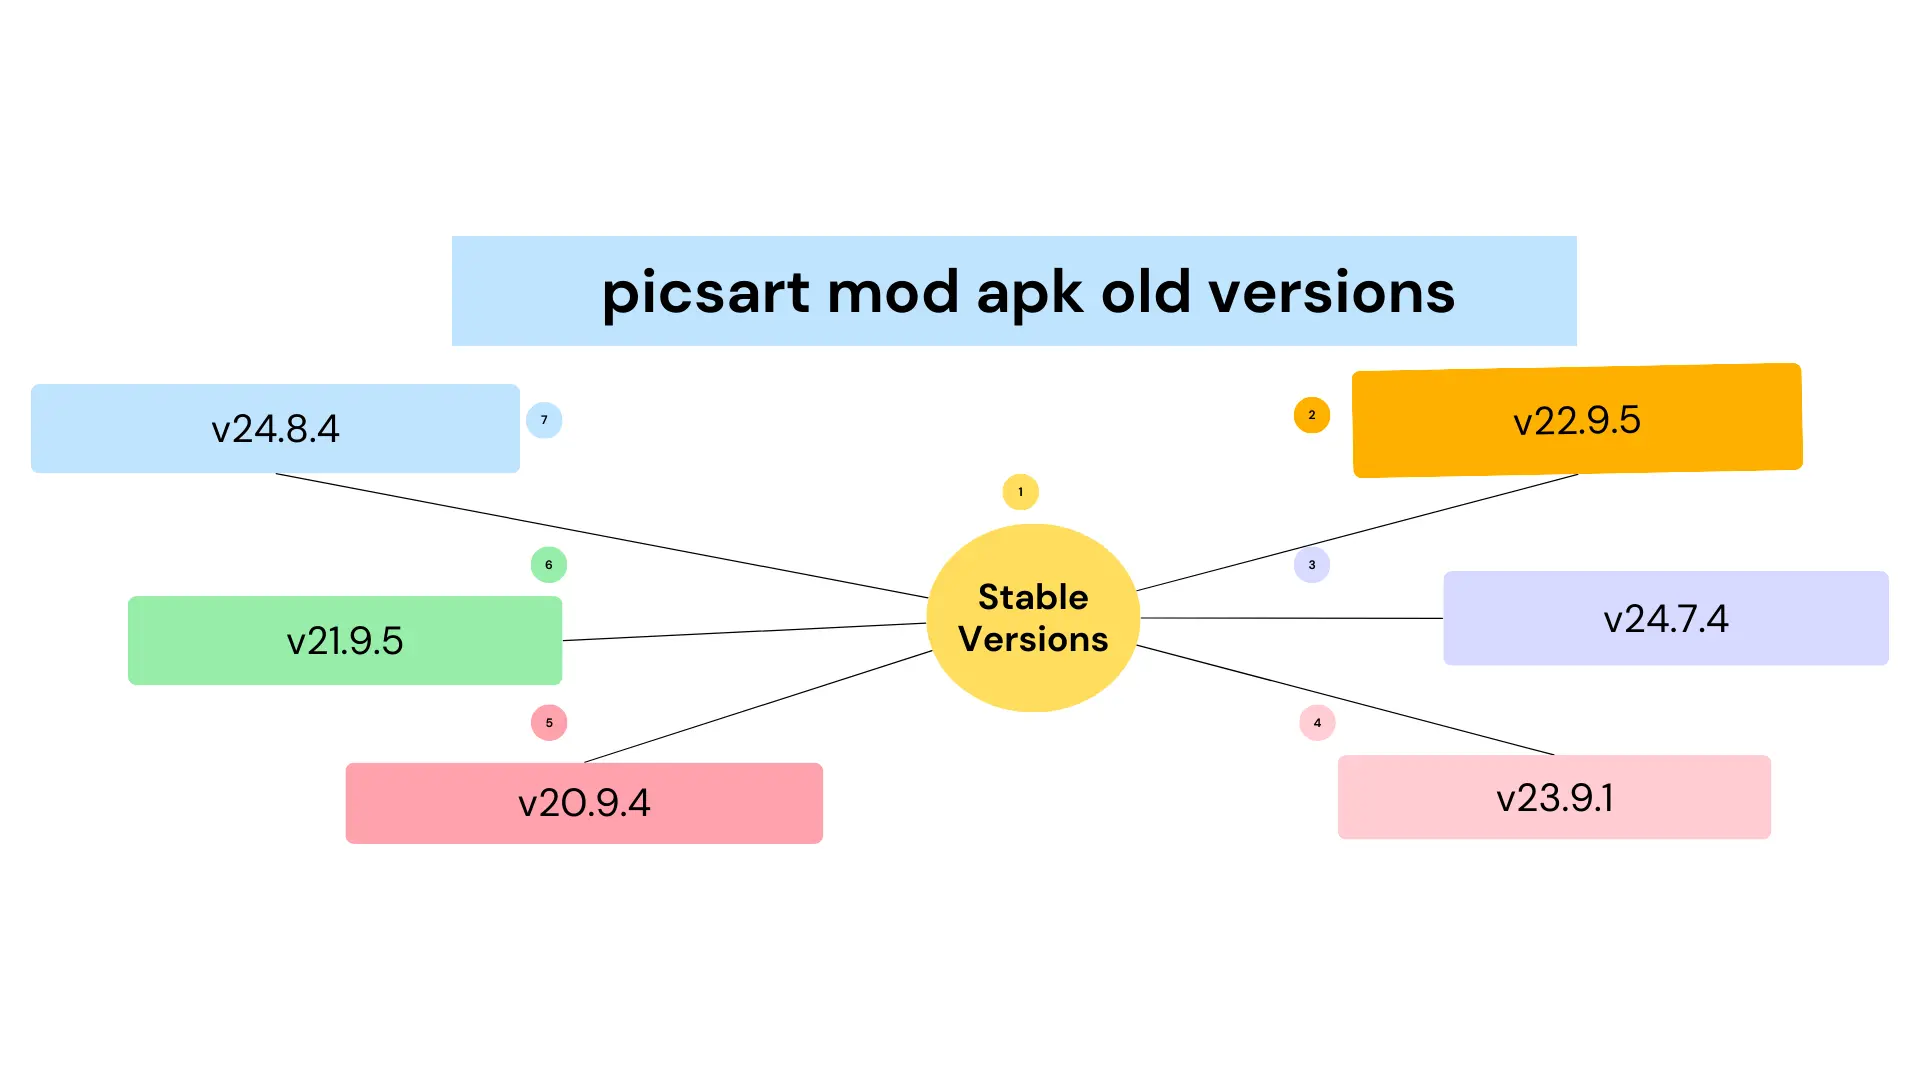 PicsArt mod APK old versions